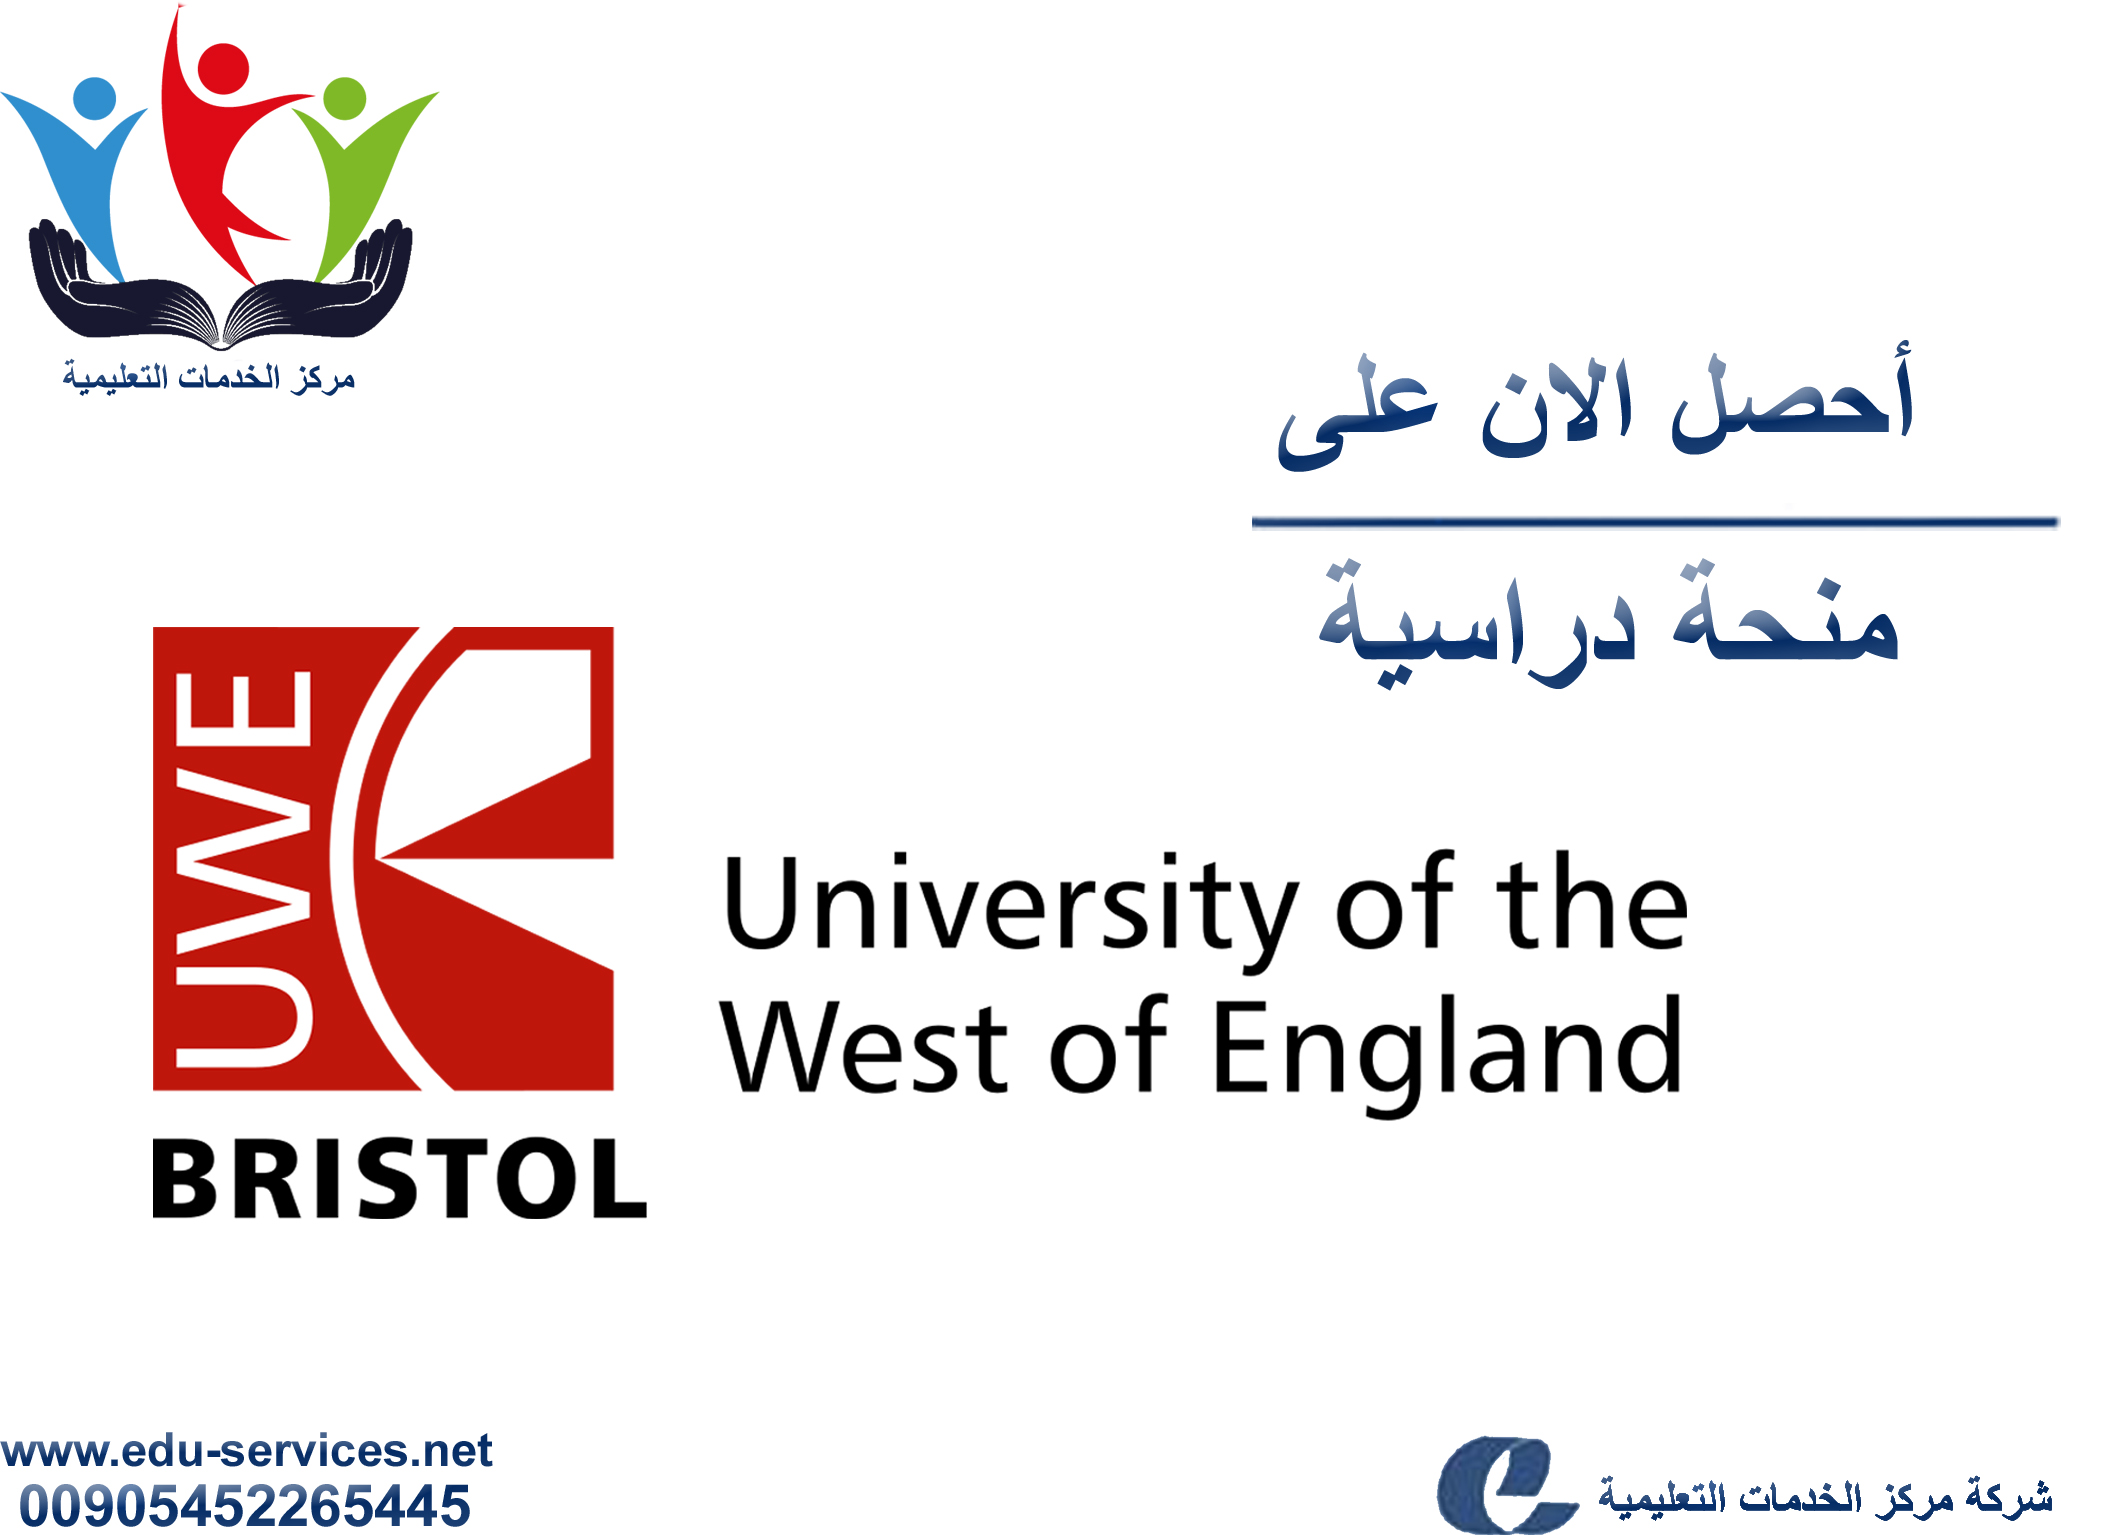 منح دراسية لدرجة الدكتوراه من UWE في بريطانيا للعام 2018-2019